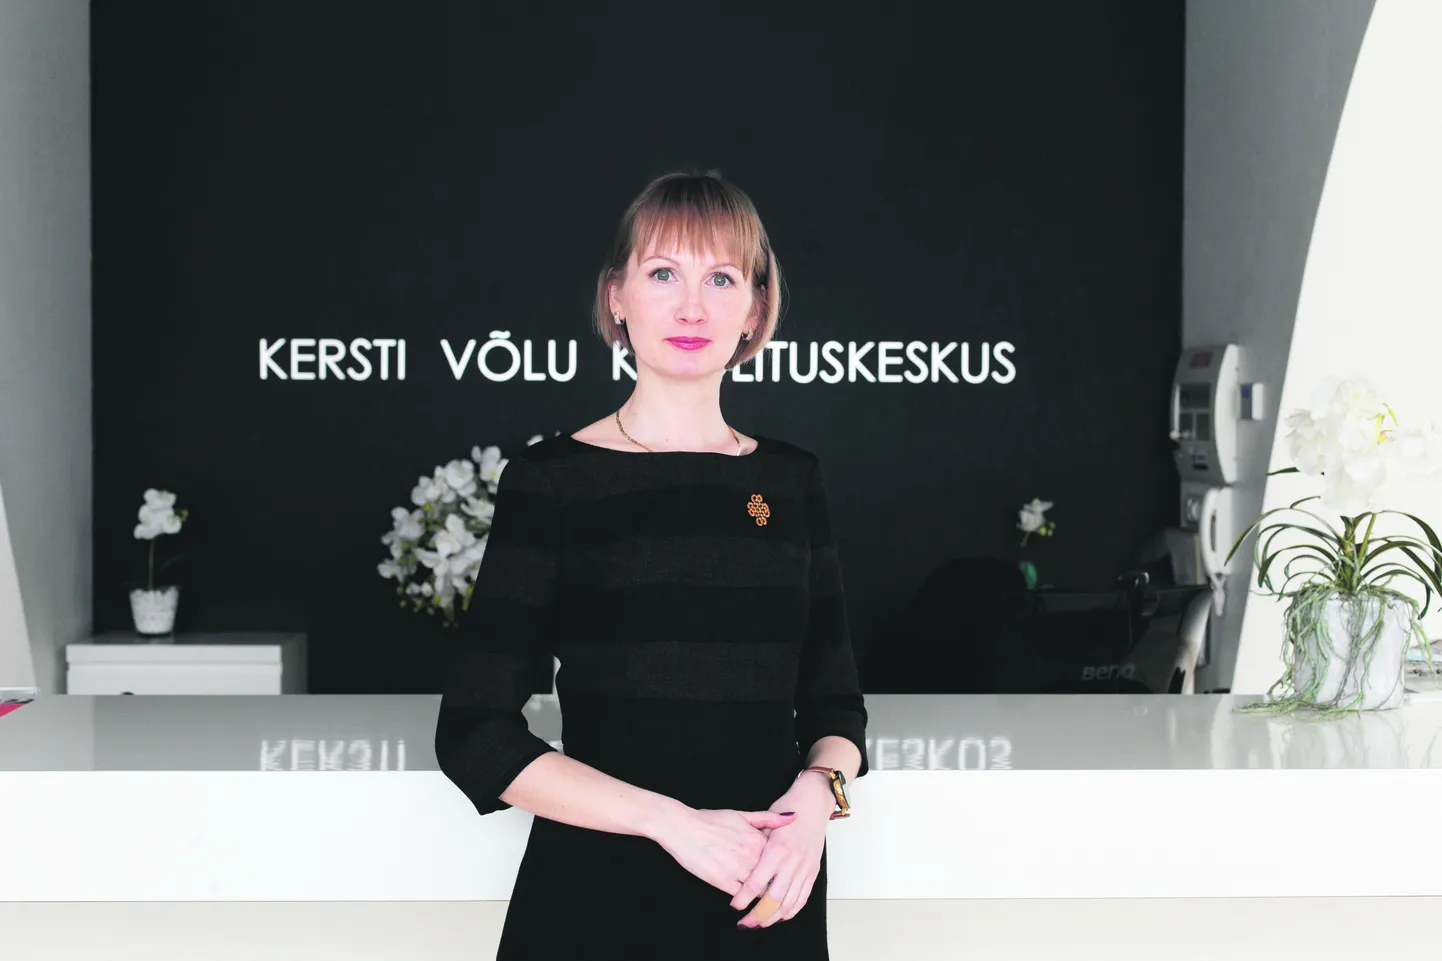 Алевтина Ермакова, сейчас работающая руководителем проектов в учебном центре Керсти Вылу, с большой долей вероятности станет следующим вице-мэром Кохтла-Ярве по вопросам культуры и образования.